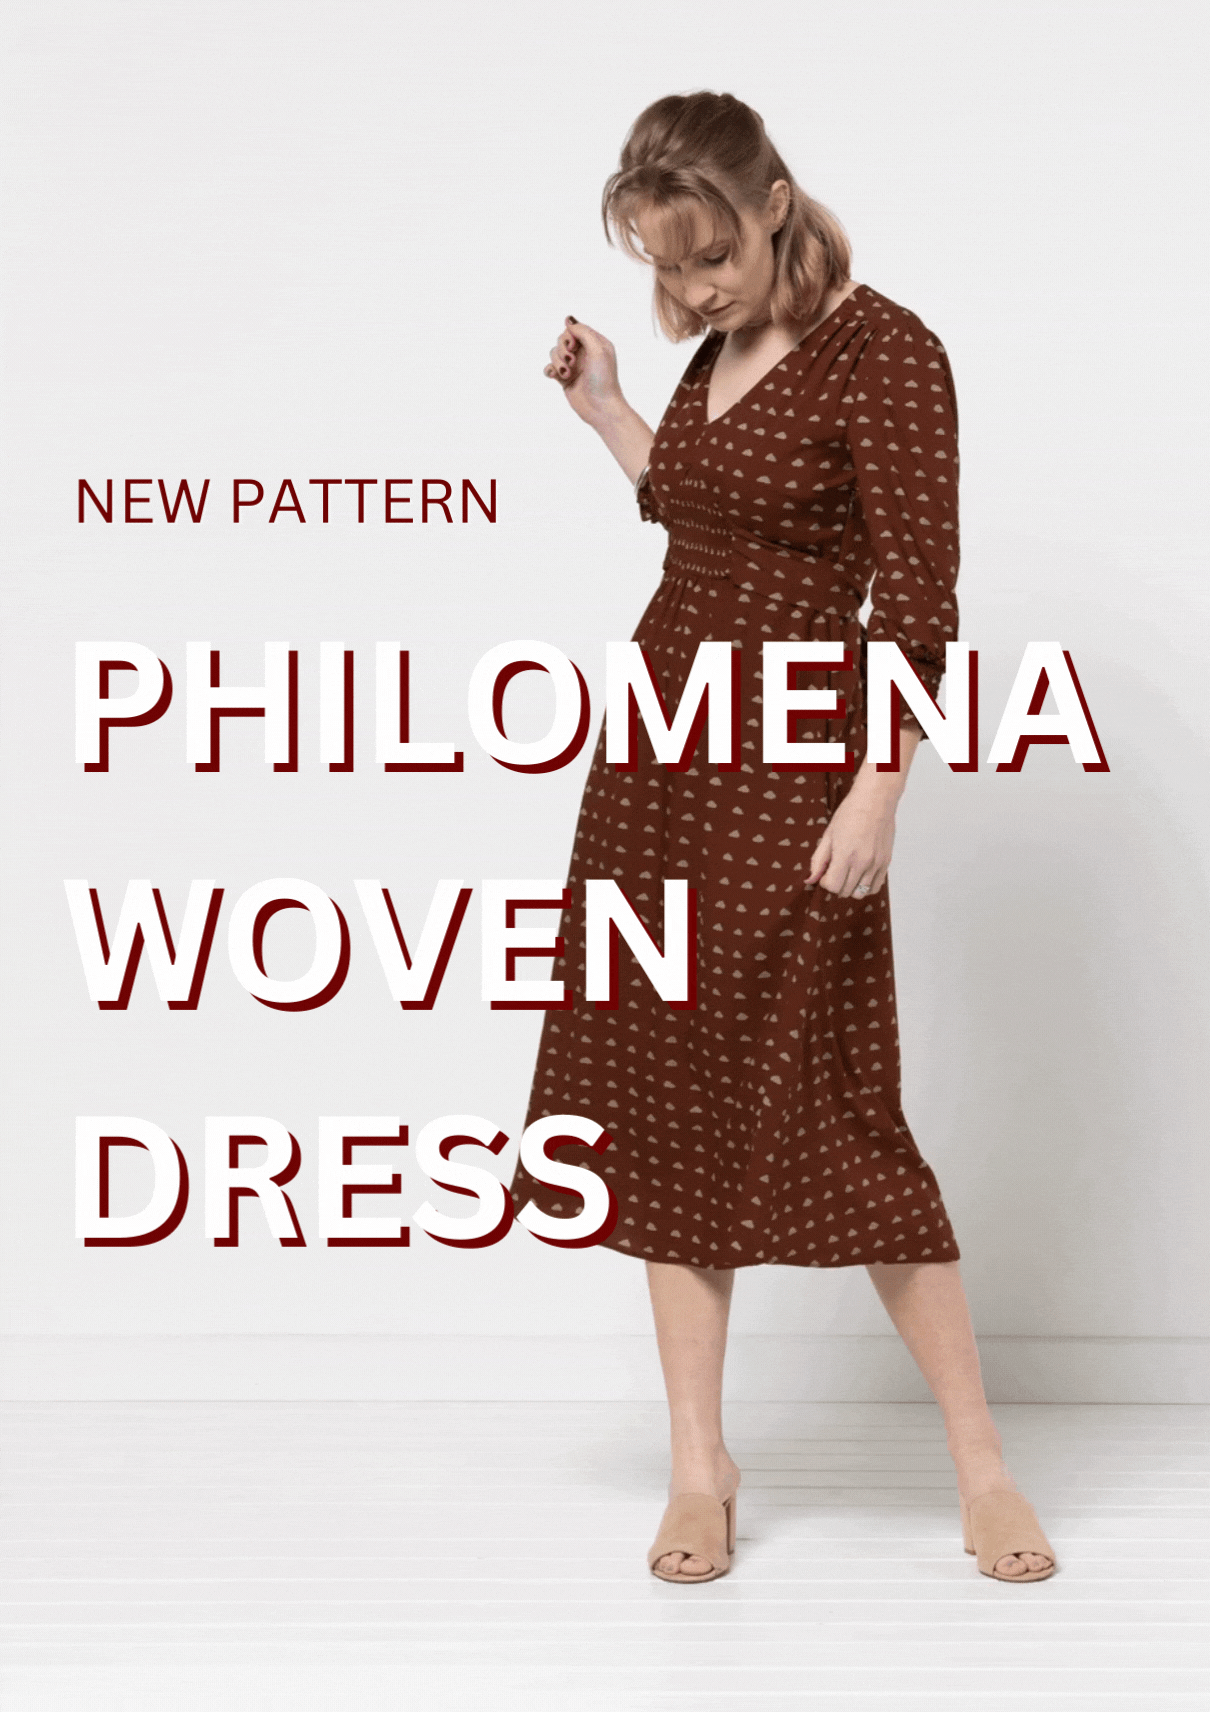 New Pattern - Philomena Woven Dress